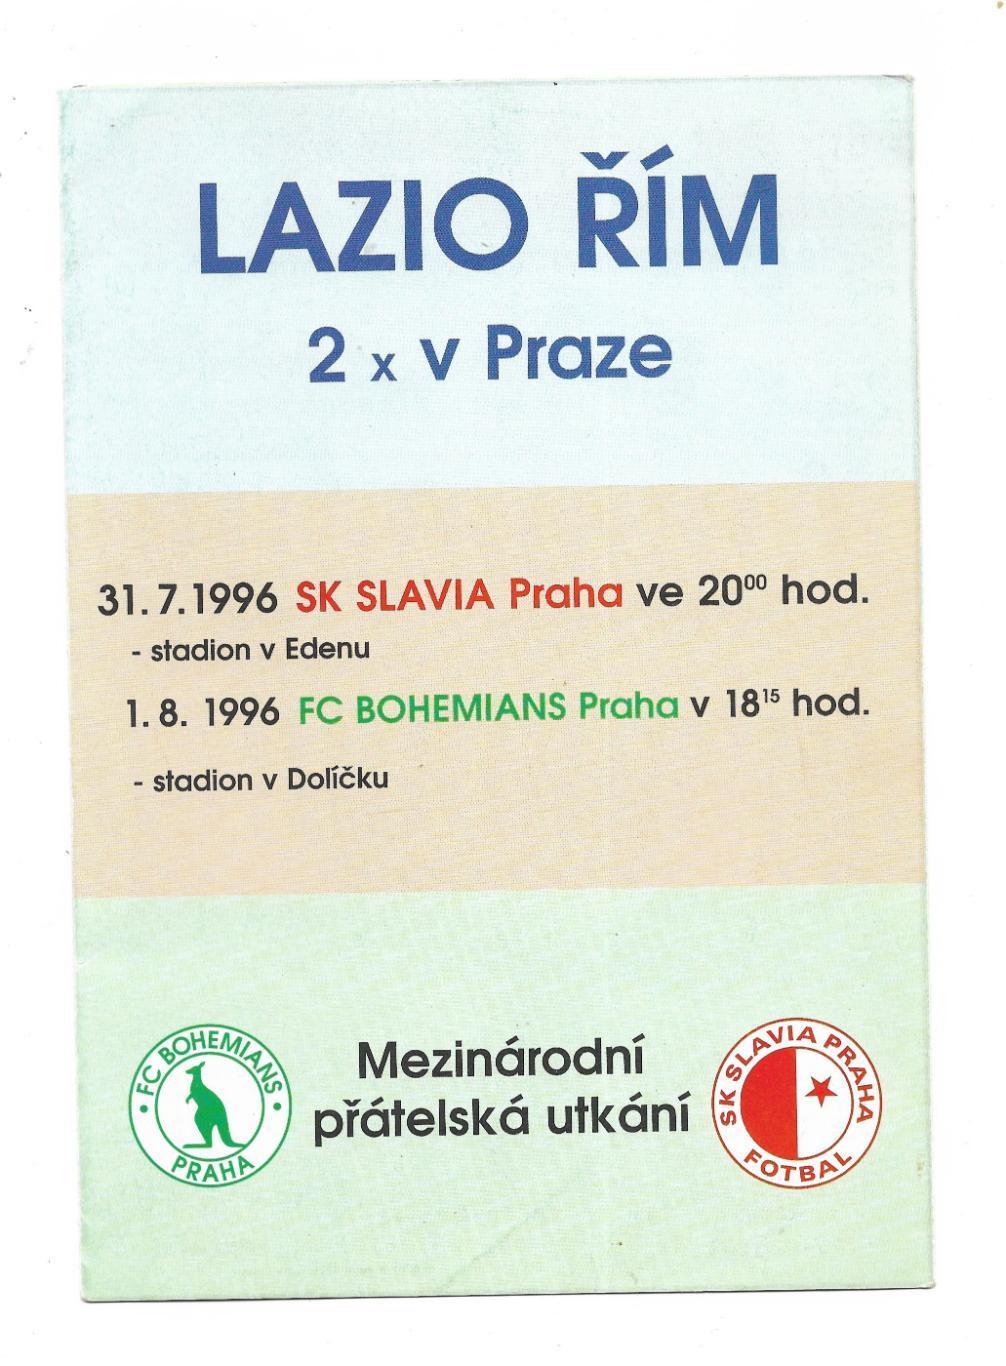 программа. LAZIO_Rim v Praze._Slavia _31.07. 1996, v Bohemians_01.08.1996_friend